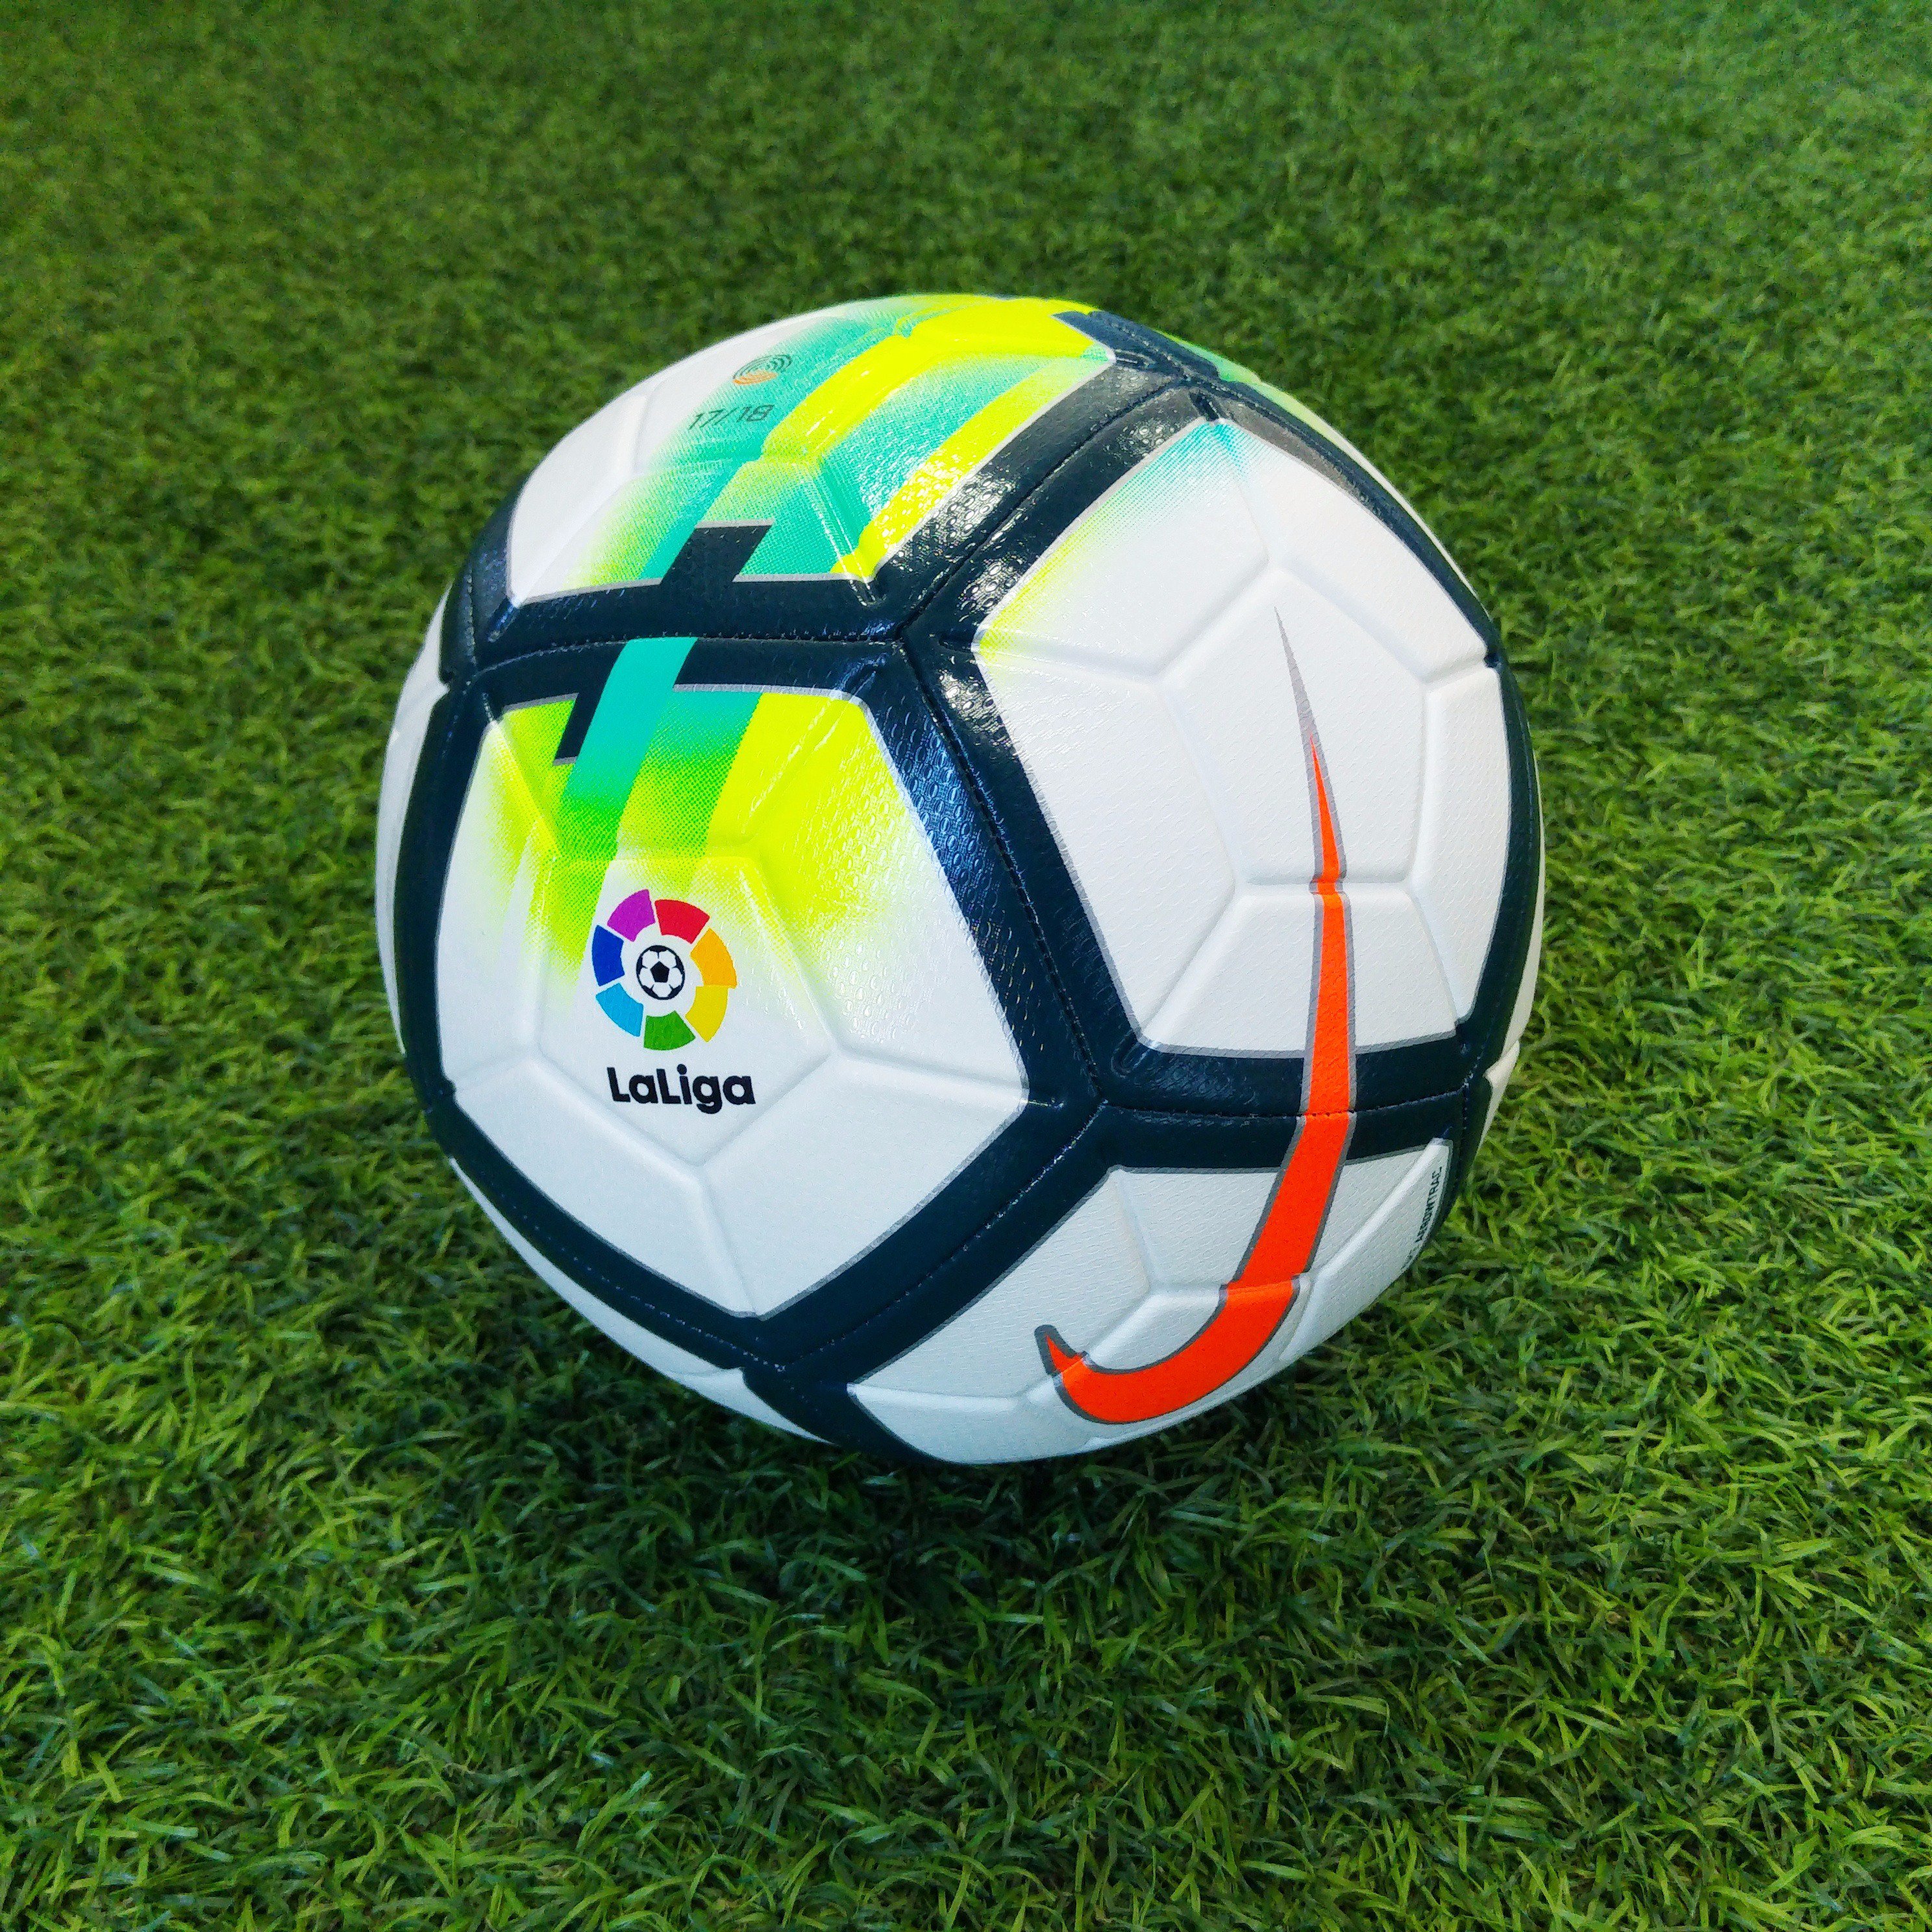 Anémona de mar amanecer Por qué no Deportes González no Twitter: "Sé el primero en tener el nuevo balón de  #LaLiga !!! ⚽🎉 El mítico #Nike Strike para la temporada 17/18 aquí  &gt;&gt; https://t.co/6RhGiFu05C https://t.co/akkUbmSdKC" / Twitter